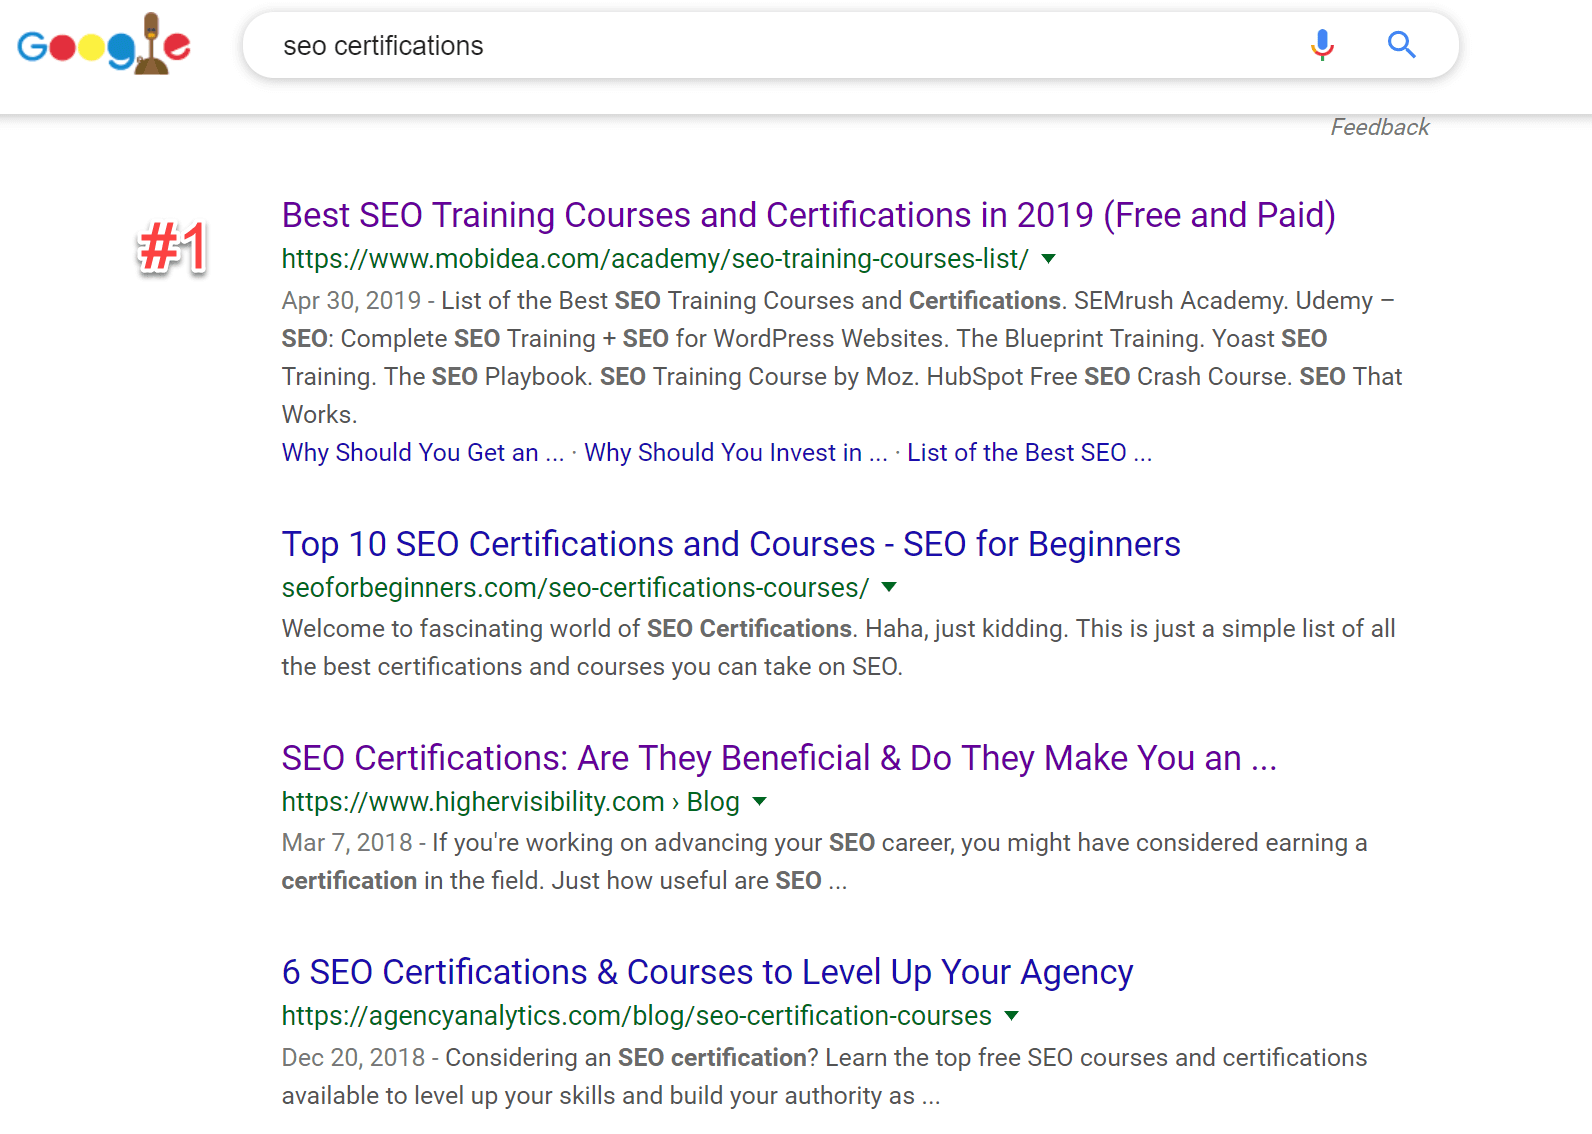 пример выдачи Google по запросу «SEO certifications»